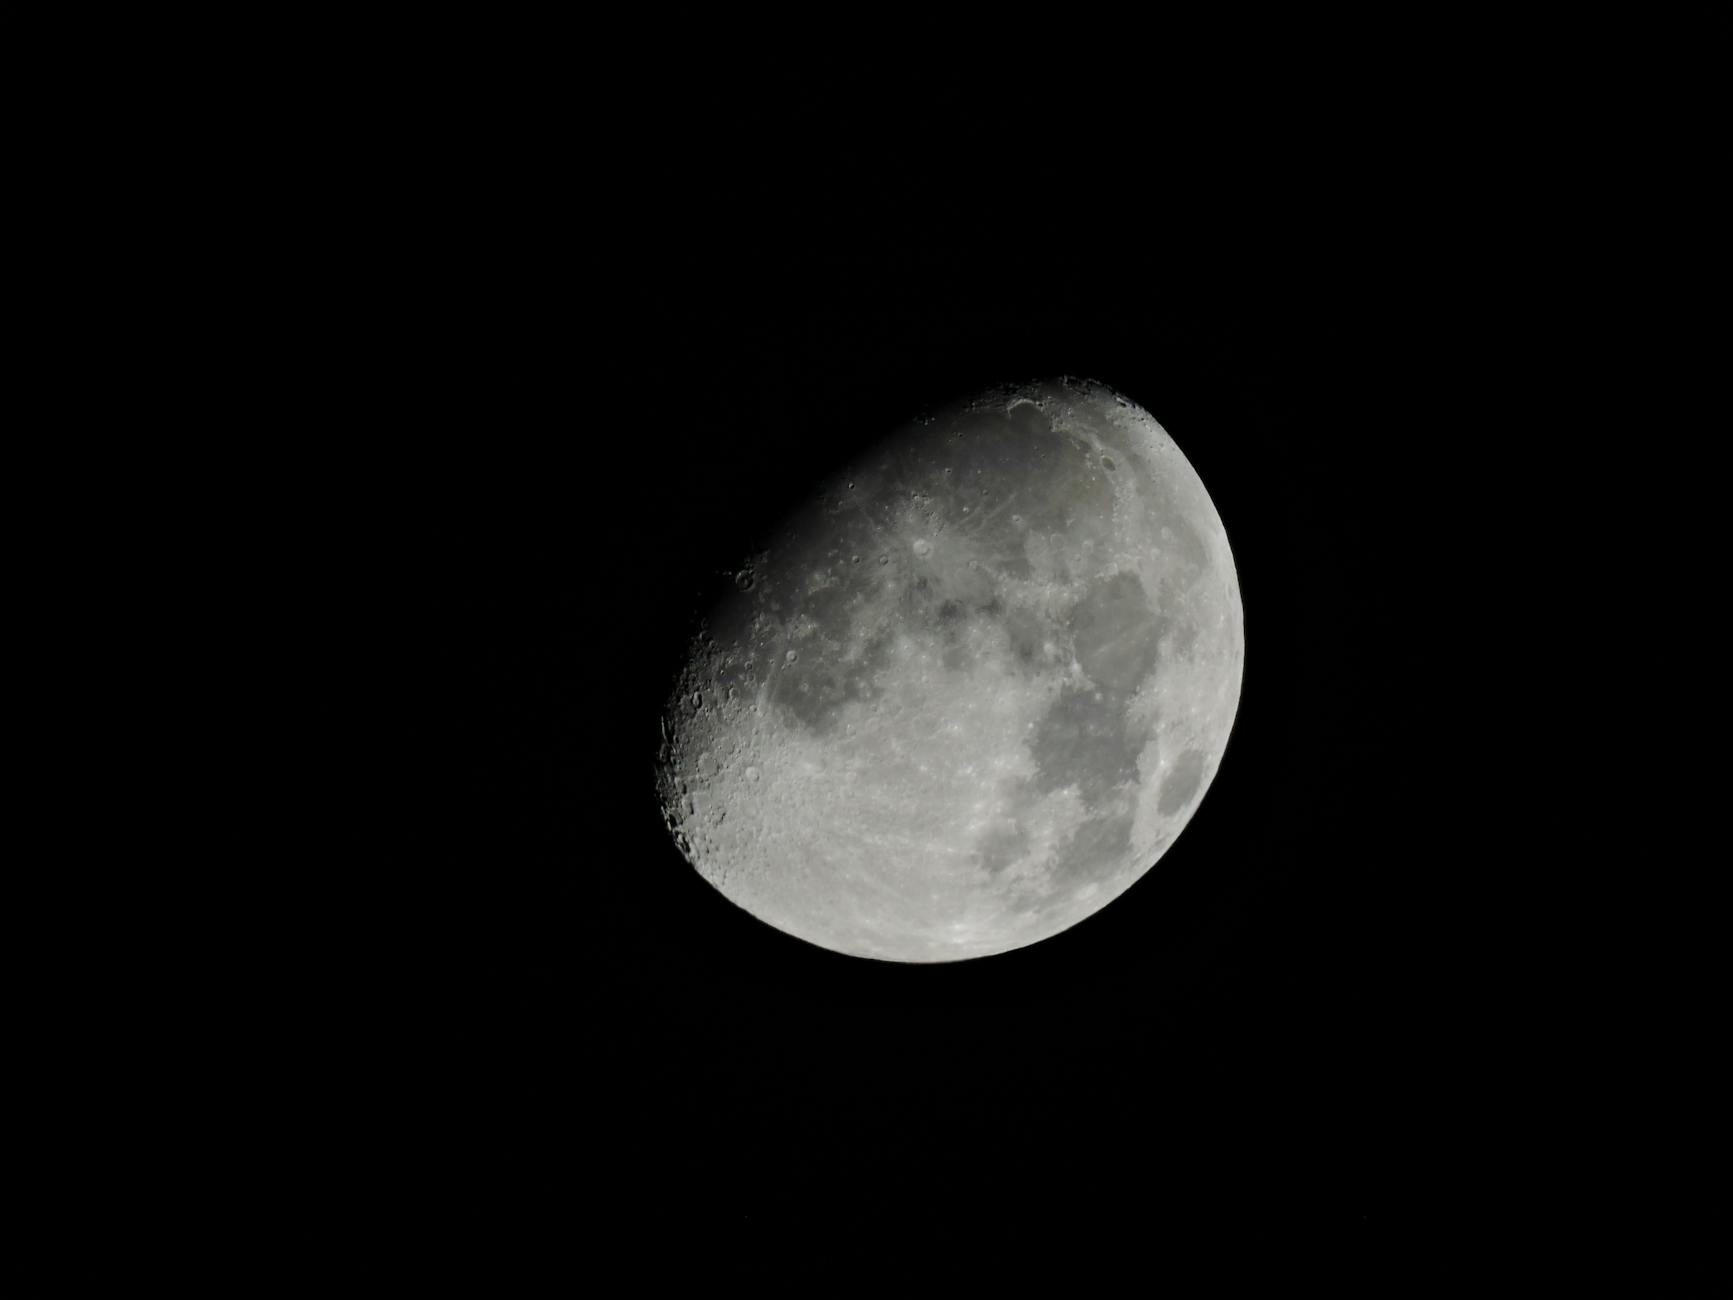 llustrasi gerhana bulan sebagian